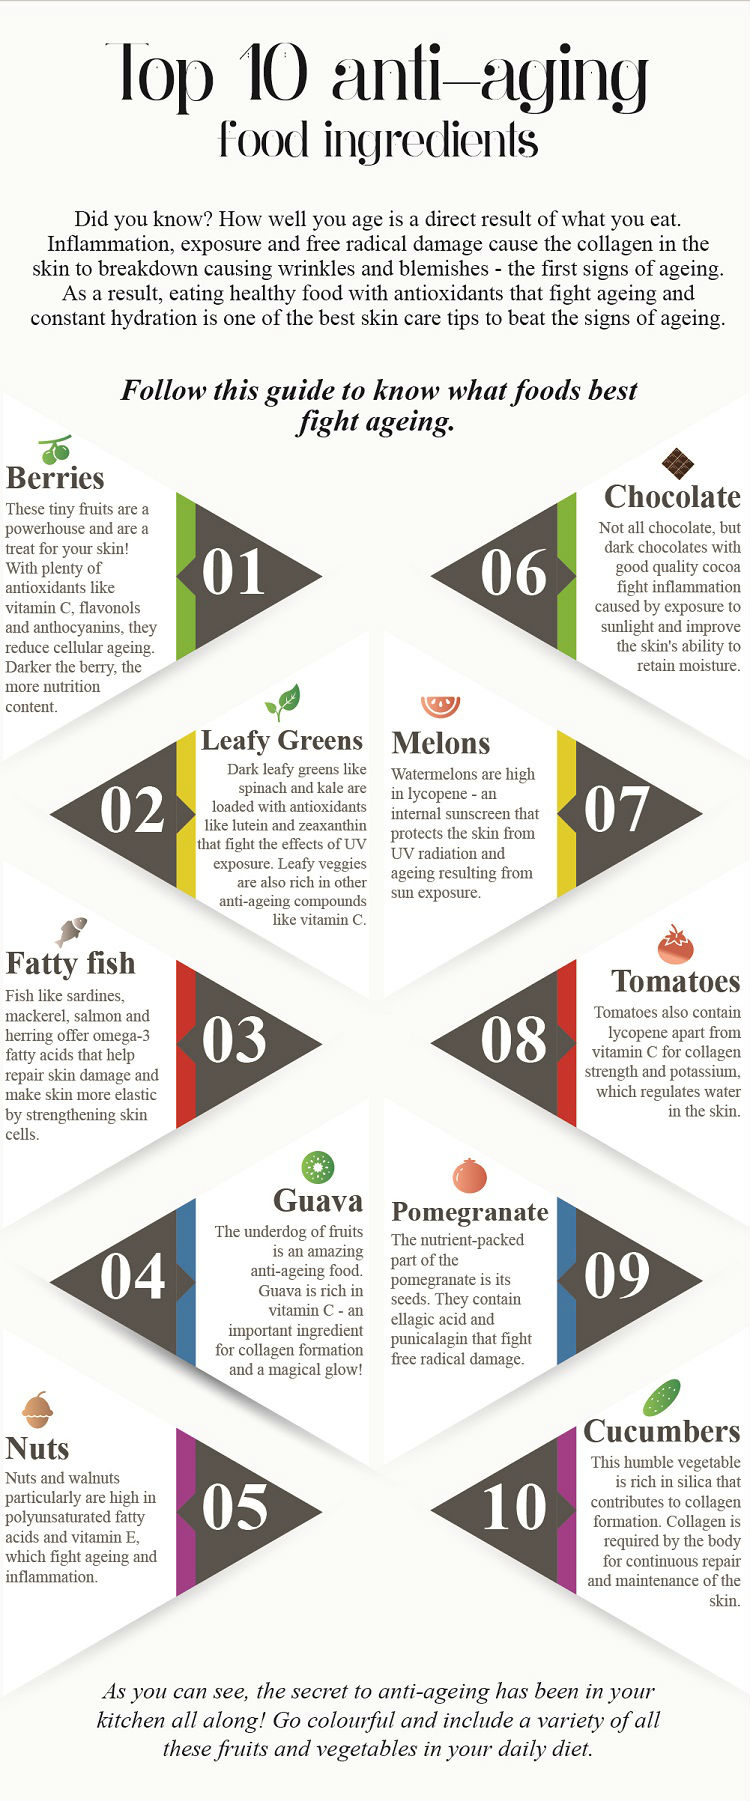 Top 10 Anti-aging Food Ingredients